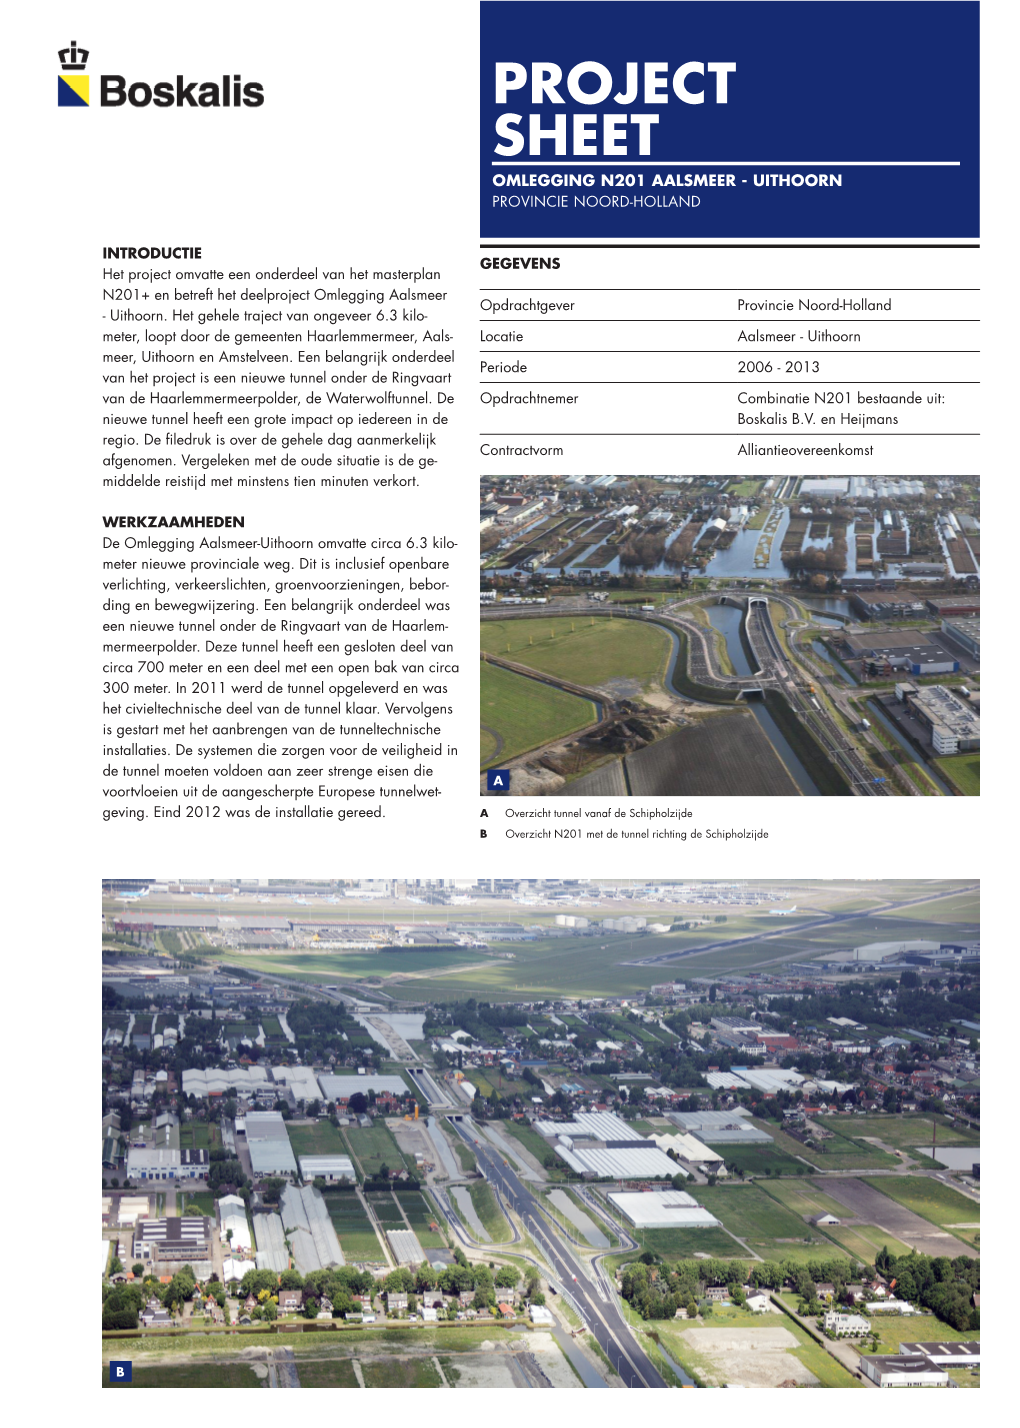 Project Sheet Omlegging N201 Aalsmeer - Uithoorn Provincie Noord-Holland